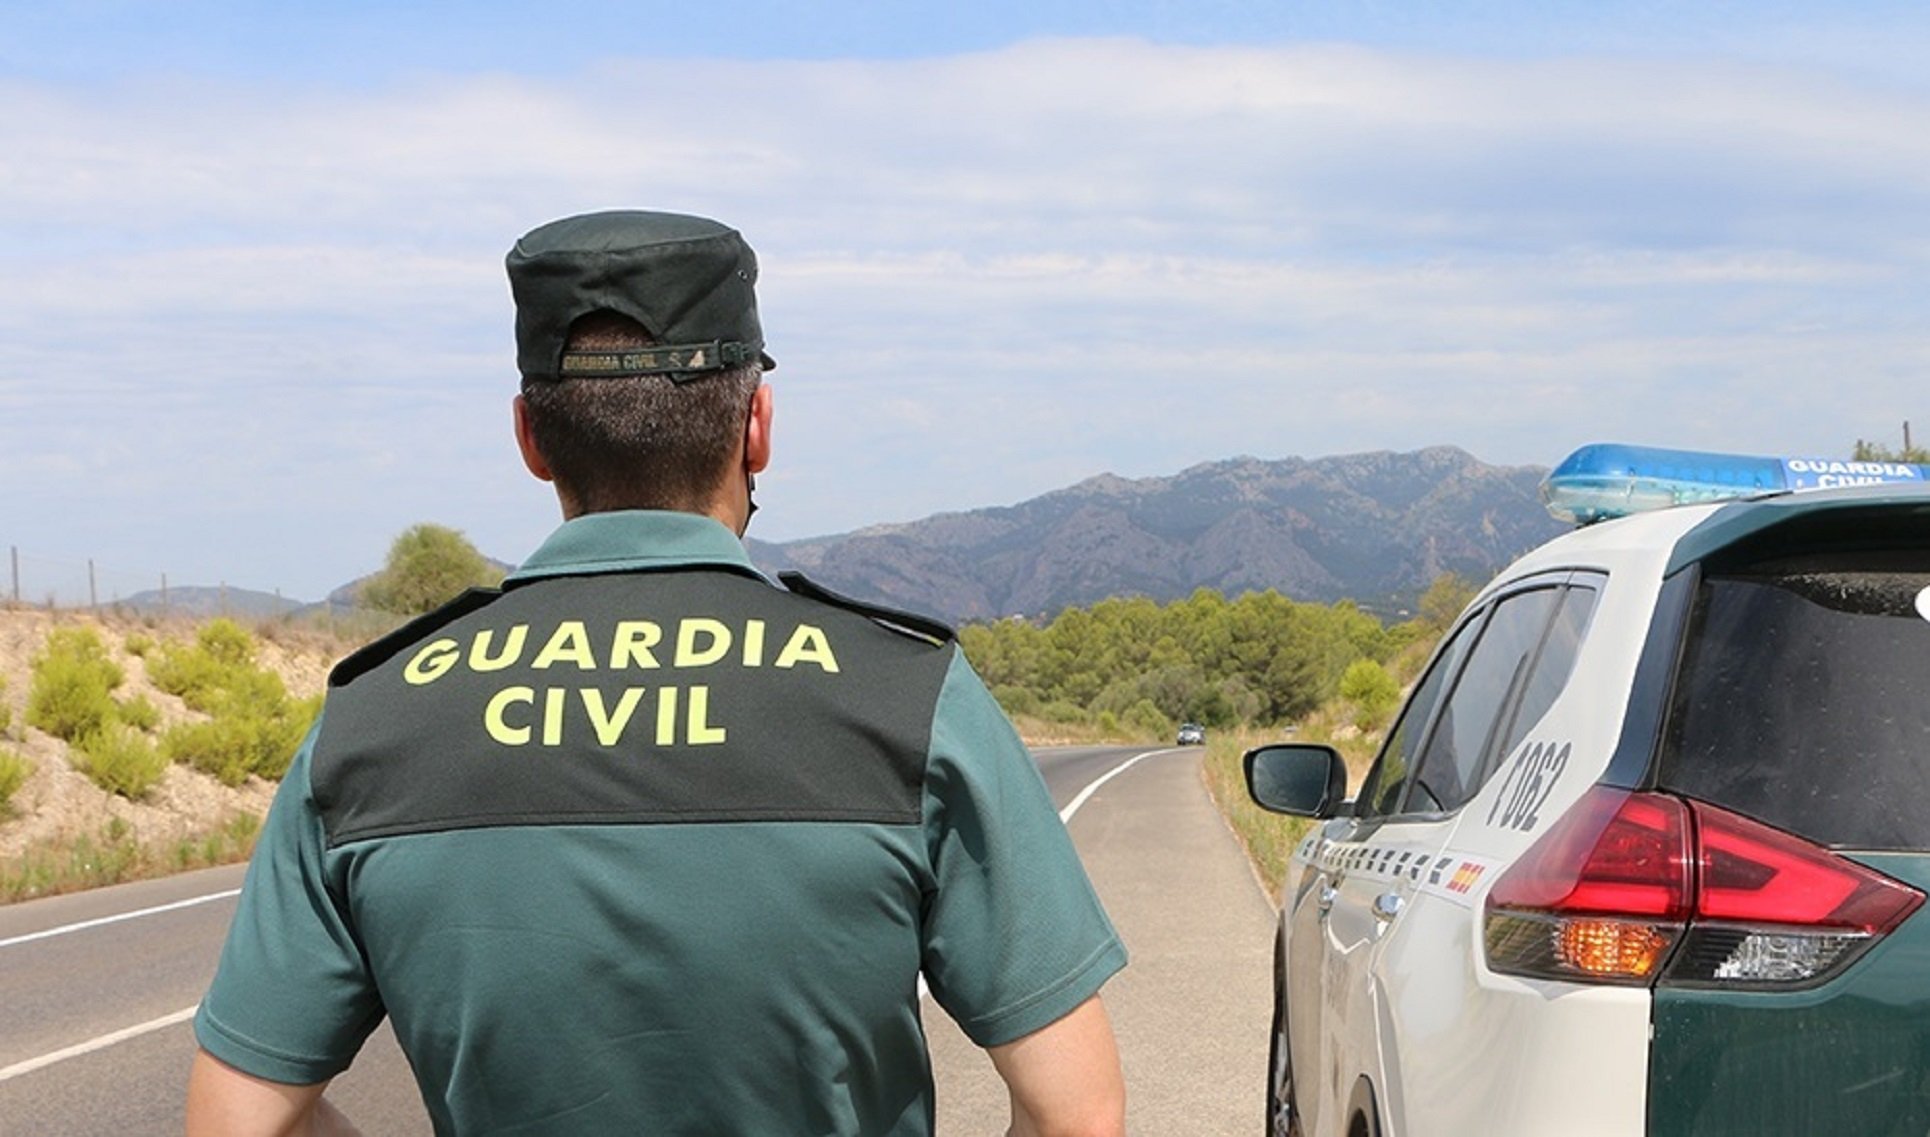 Un guardia civil destinado en Eivissa denuncia que vive en una furgoneta porque no puede pagar un piso